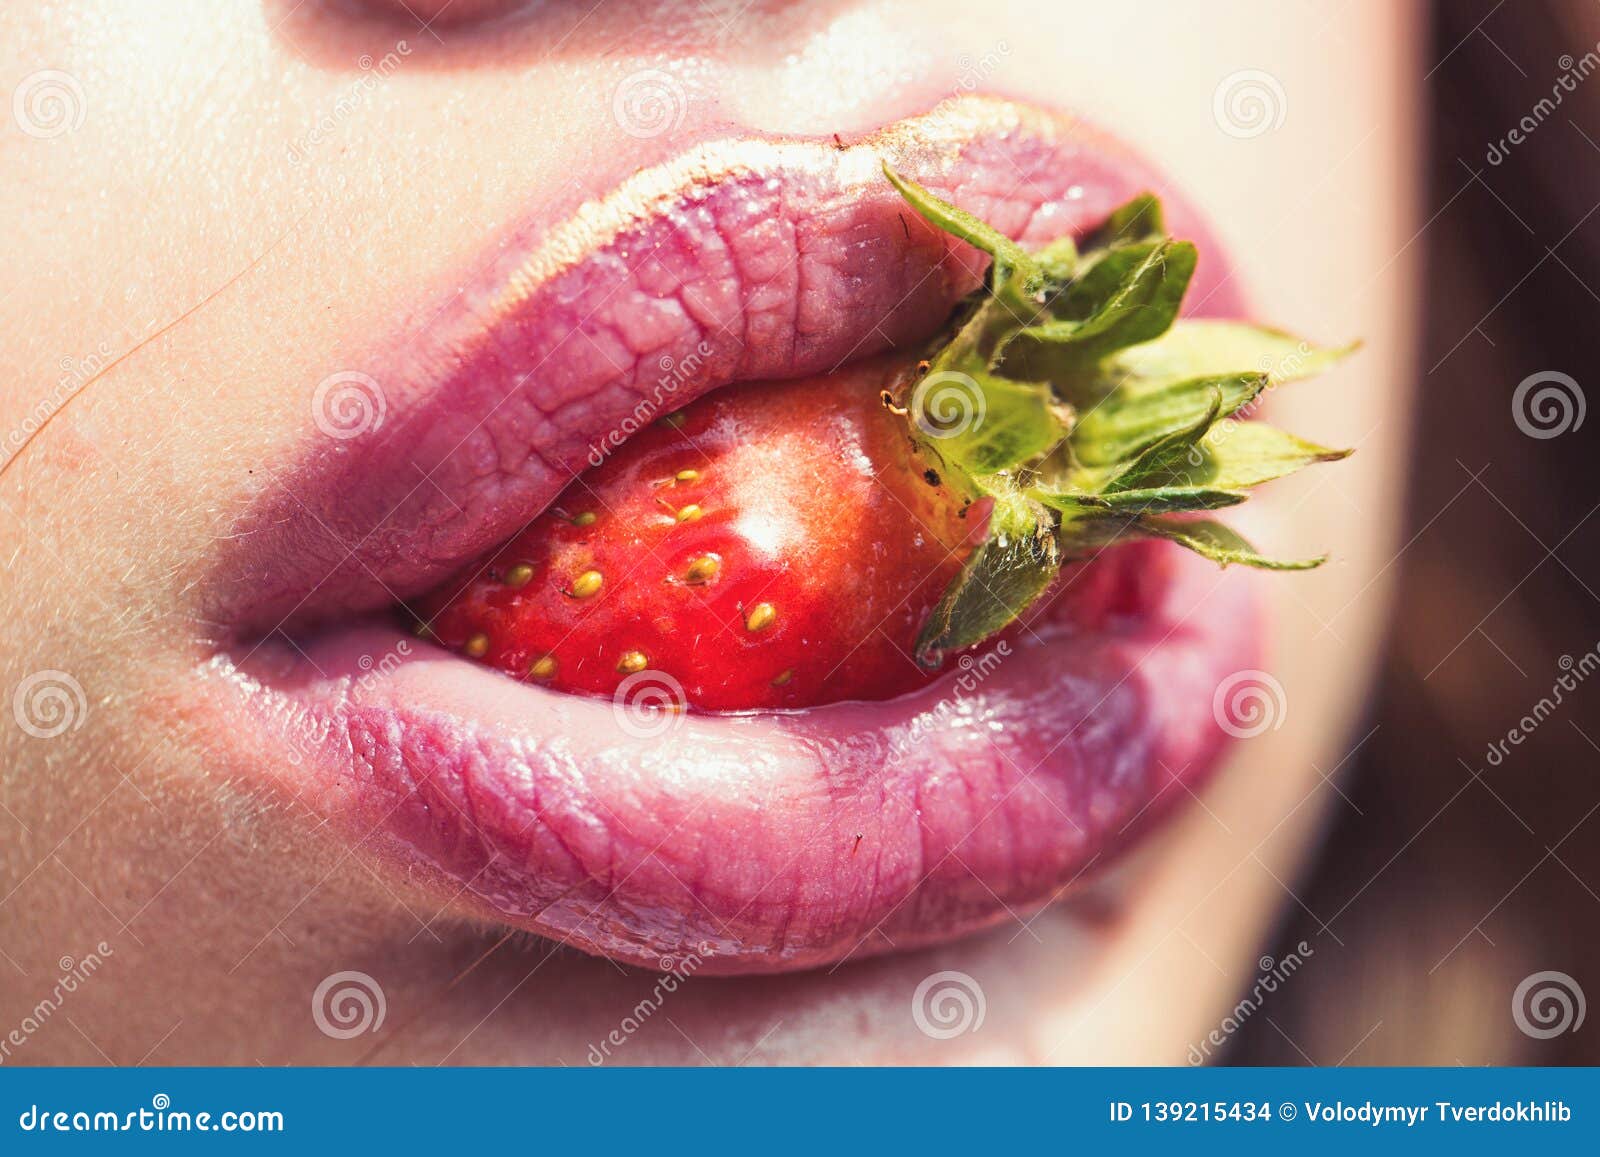 Erdbeere Im Mund Mit Den Rosigen Lippen Make Up Stockfoto Bild Von Make Lippen